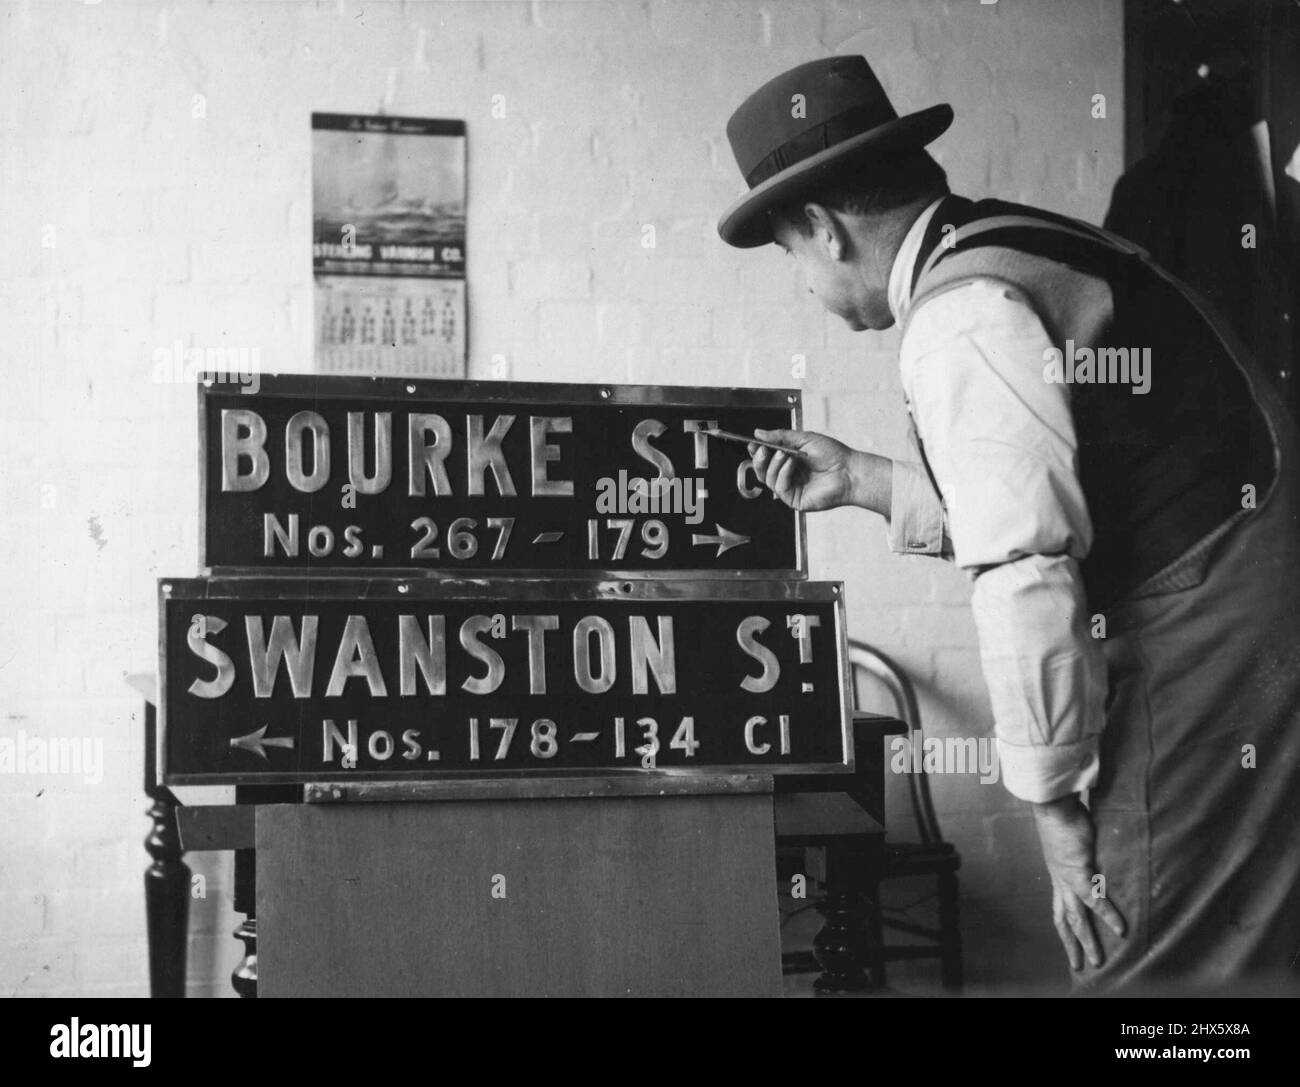 Nouvelle idée pour City Corners -- des plaques de noms comme celles-ci seront placées à 500 intersections de ville les plaques d'essai, montrées ici recevant des touches finales aujourd'hui, sont un succès au coin des rues Bourke et Swanston. Les noms et numéros de rue sont en relief en aluminium sur fond noir. 27 juin 1938. Banque D'Images